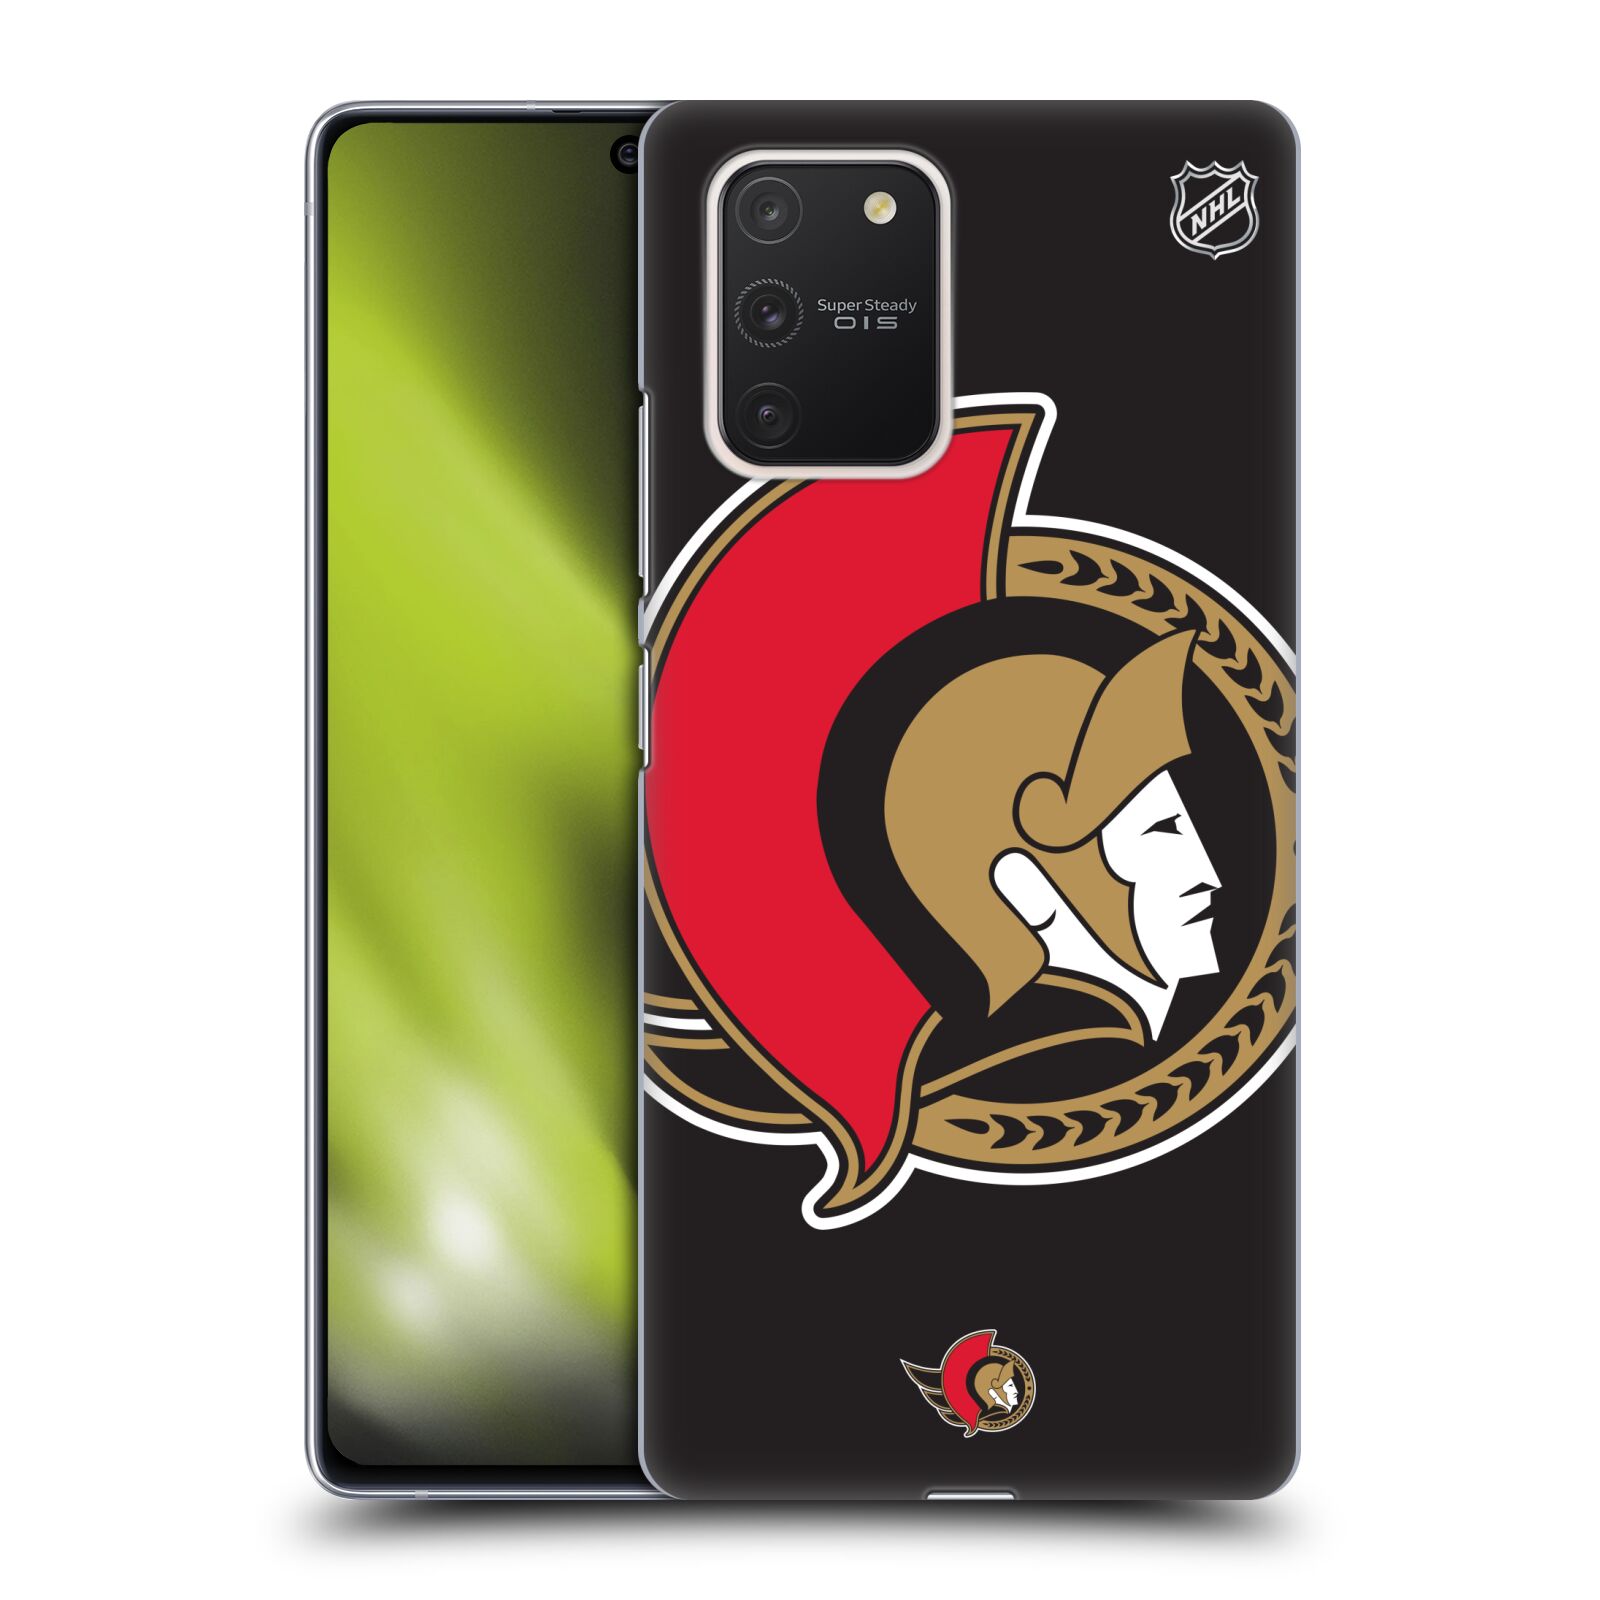 Pouzdro na mobil Samsung Galaxy S10 LITE - HEAD CASE - Hokej NHL - Ottawa Senators - Velký znak